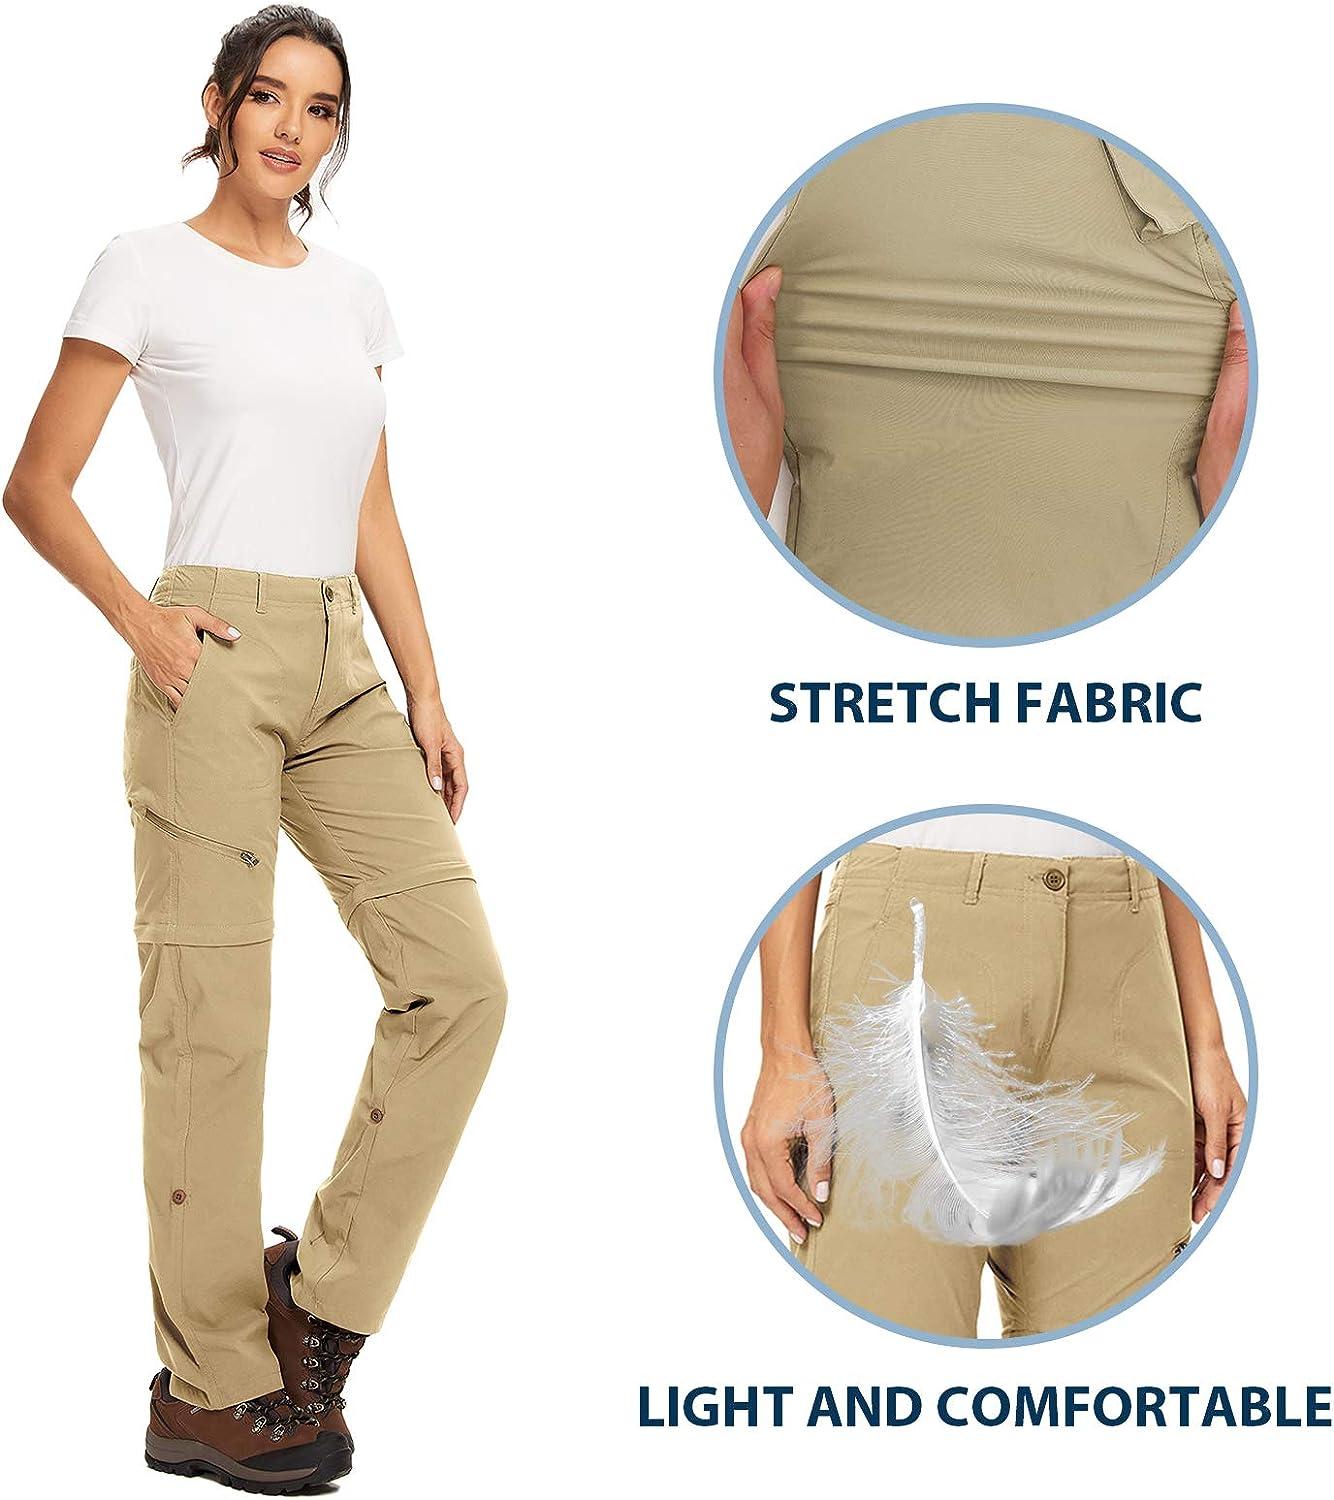 Toomett Women's Hiking Pants Convertible Quick Dry Lightweight Outdoor Capri UPF 40 Fishing Waterproof Travel Safari Pants